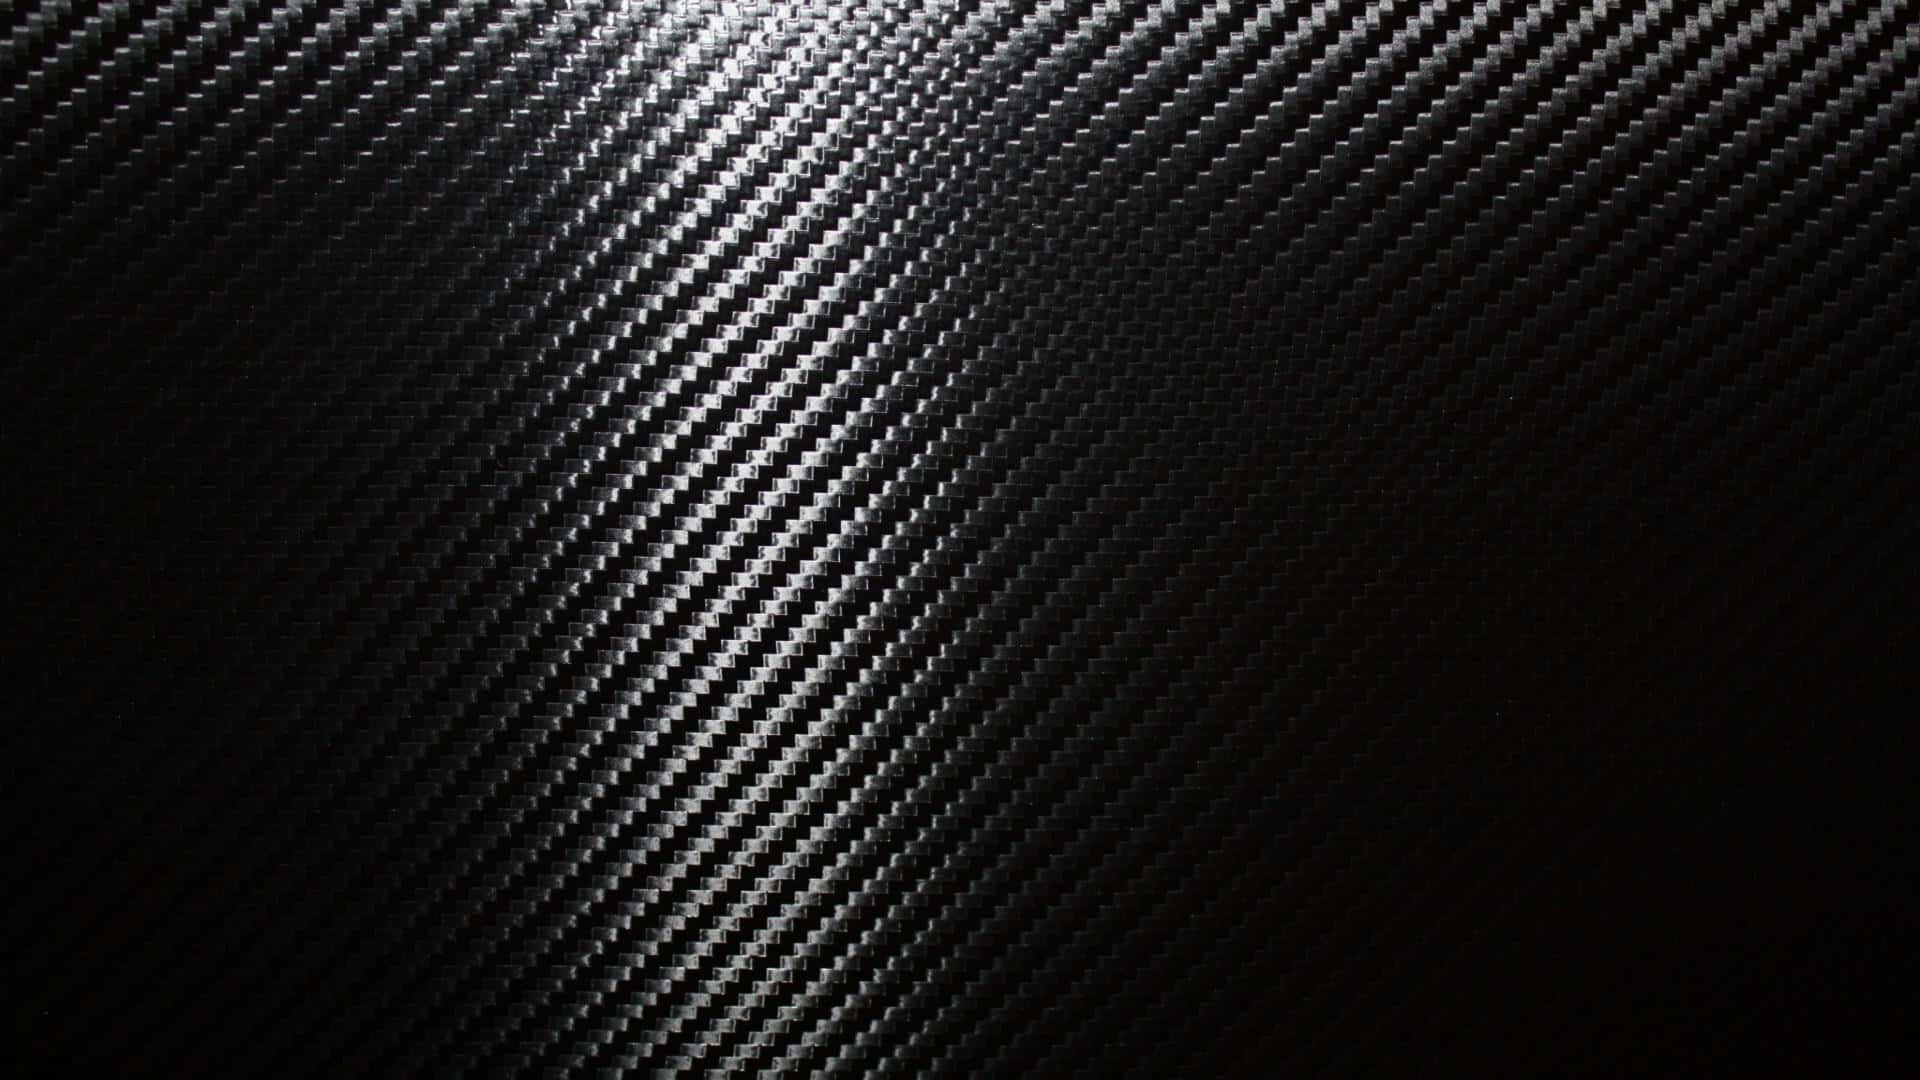 Et tæt skud af sort kulfiber i et luksuriøst mønster. Wallpaper